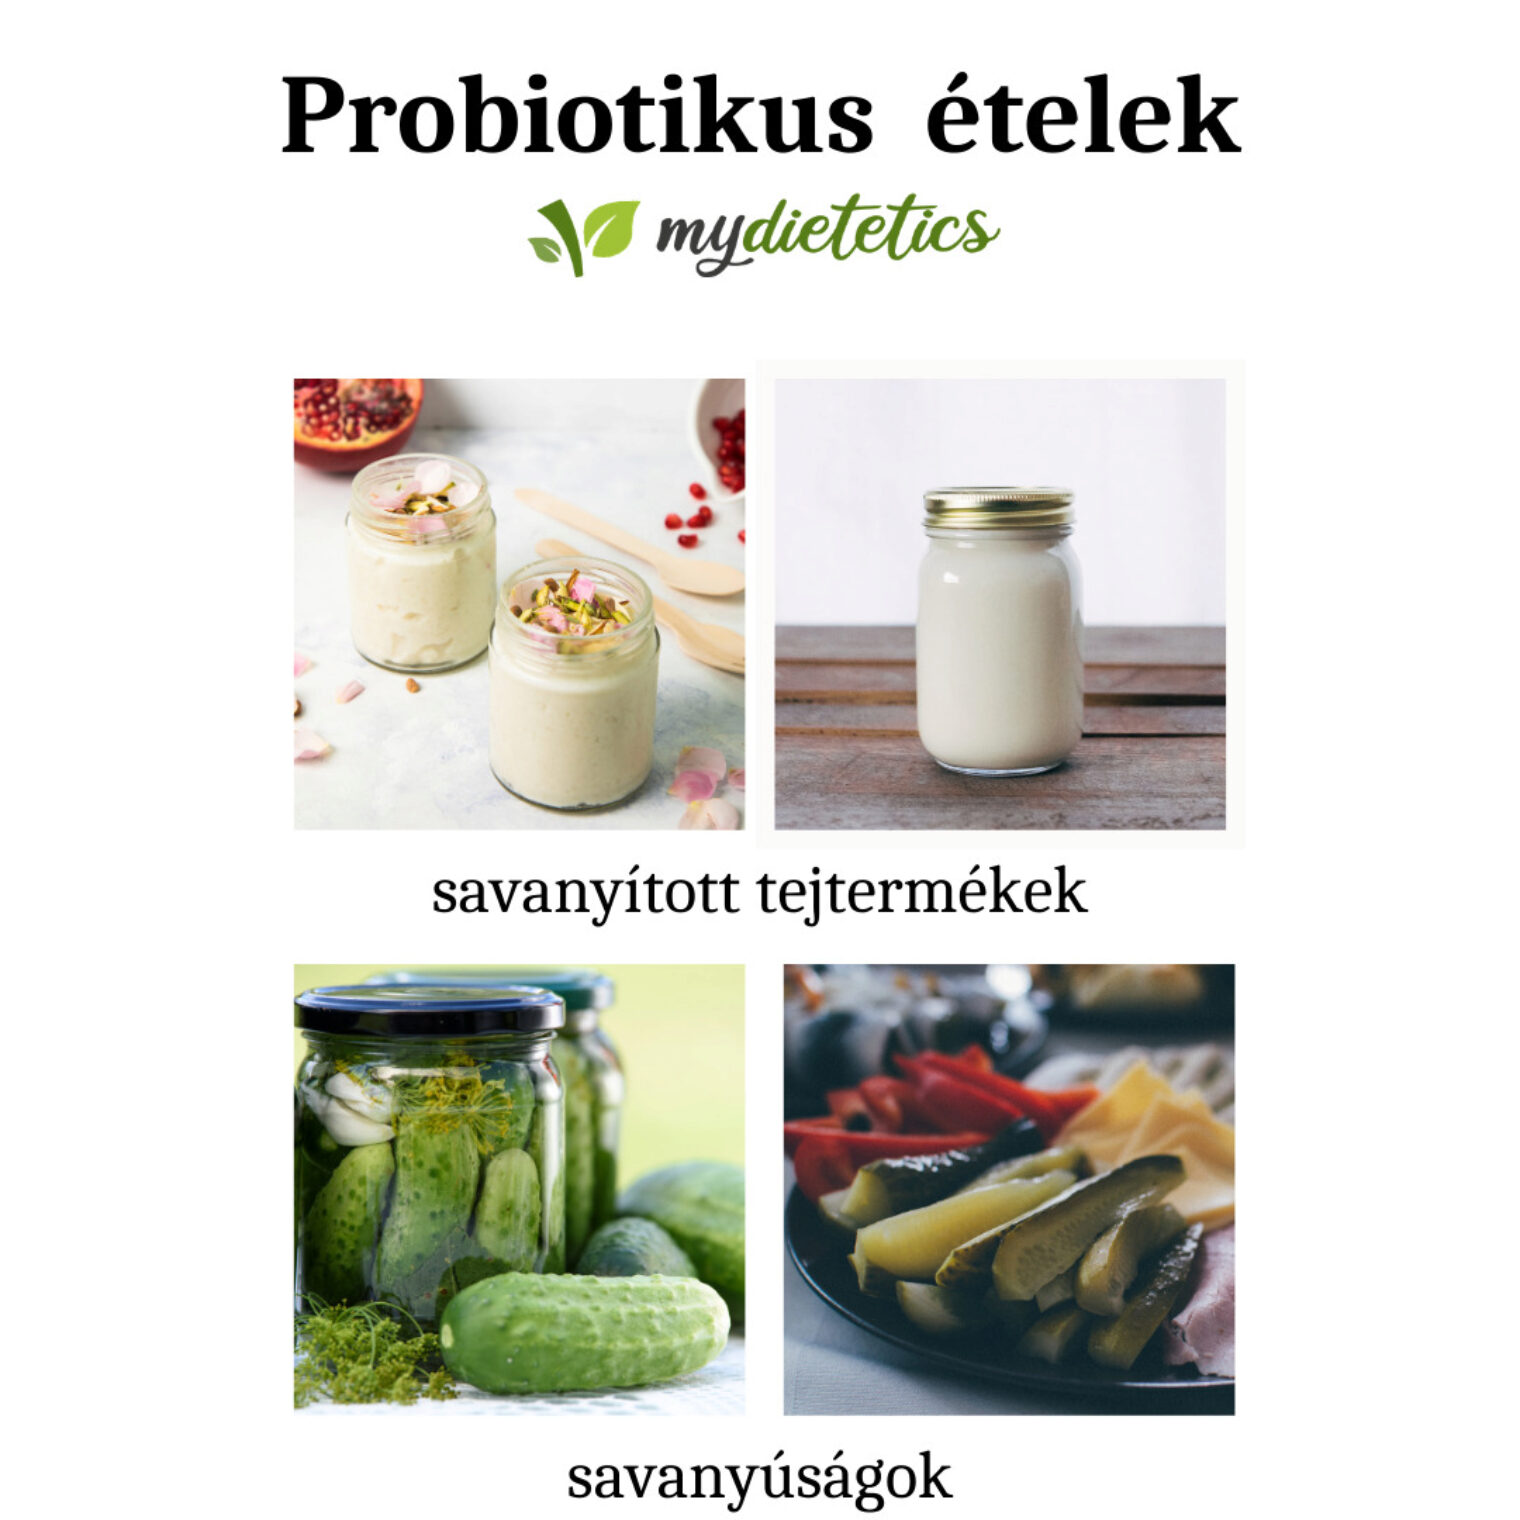 Probiotikus ételek